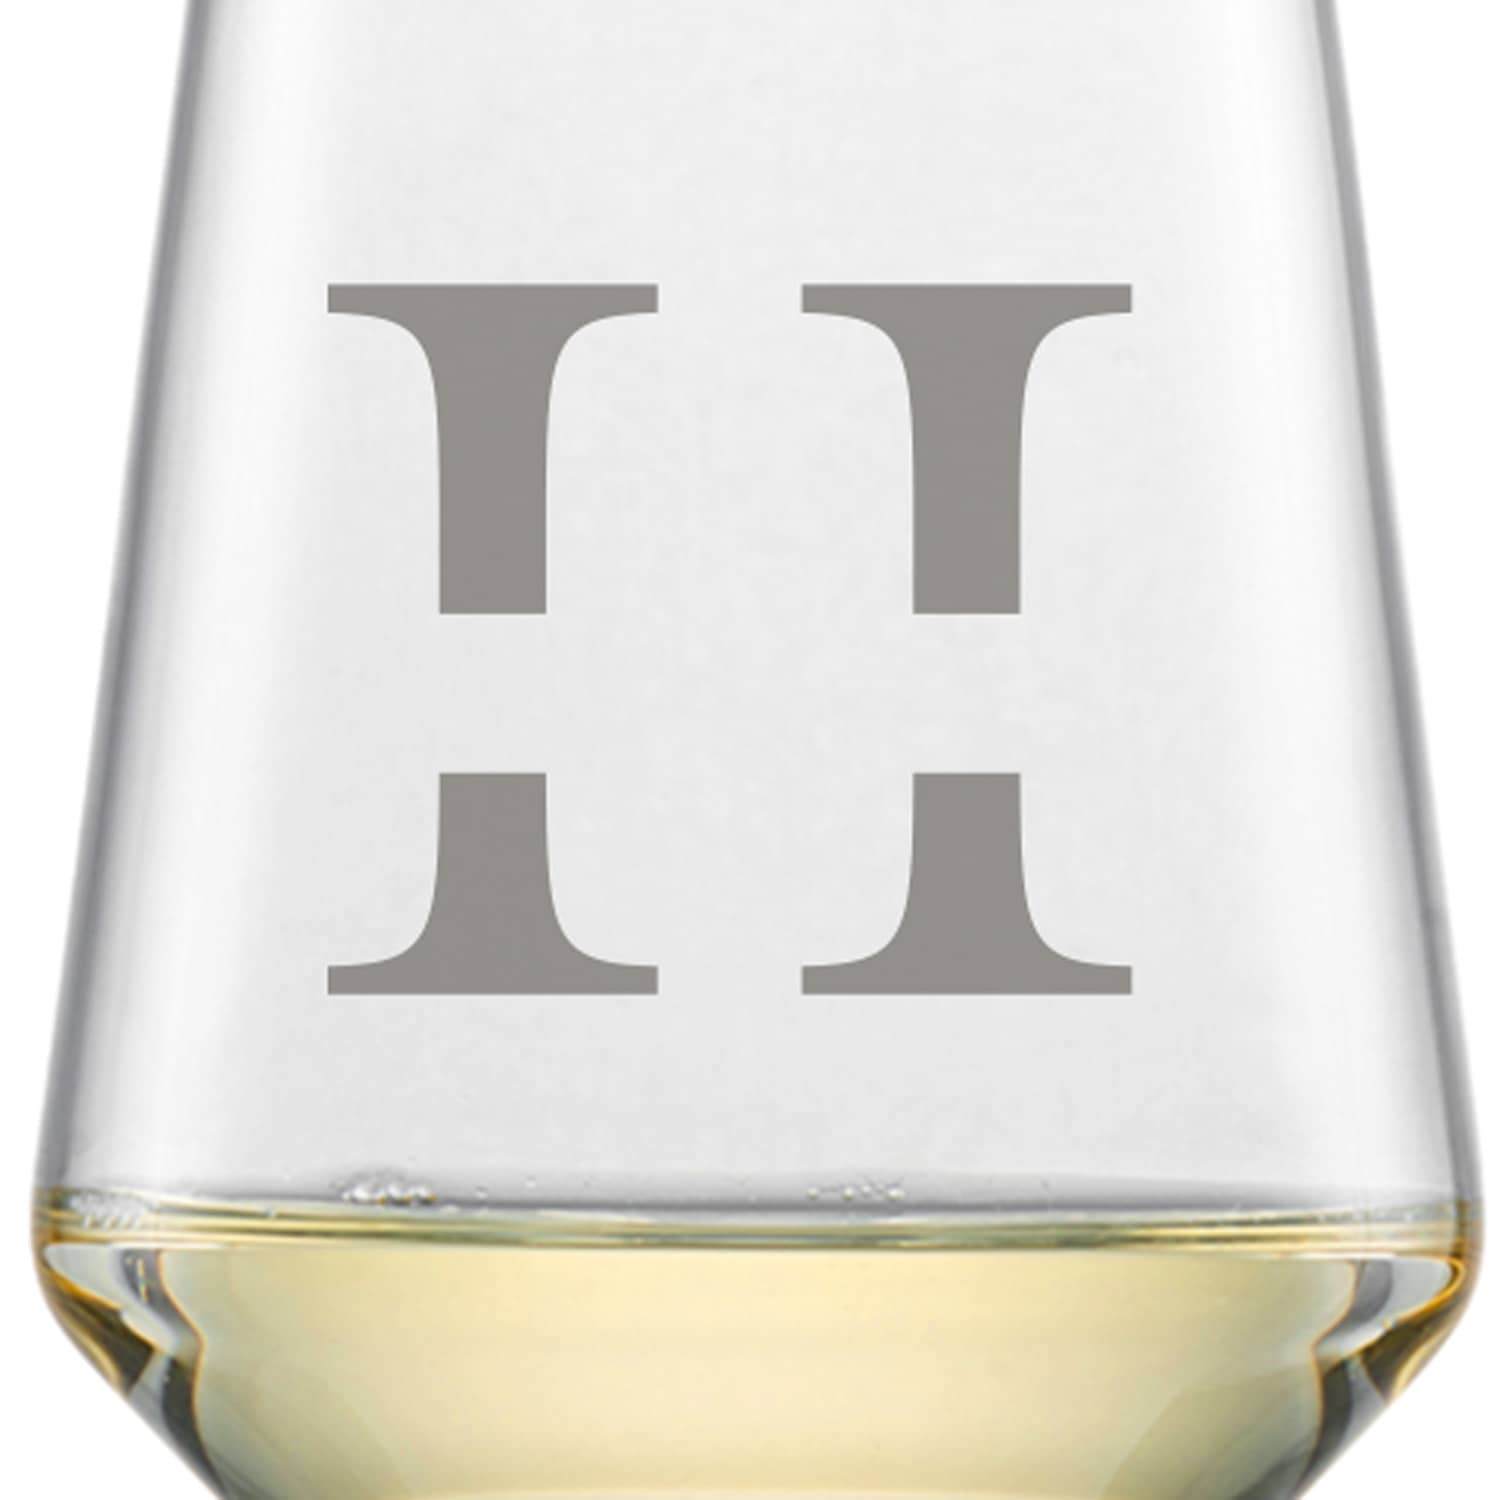 Schott Zwiesel Sauvignon Weißweinglas PURE mit Namen oder Wunschtext graviert (Initiale)